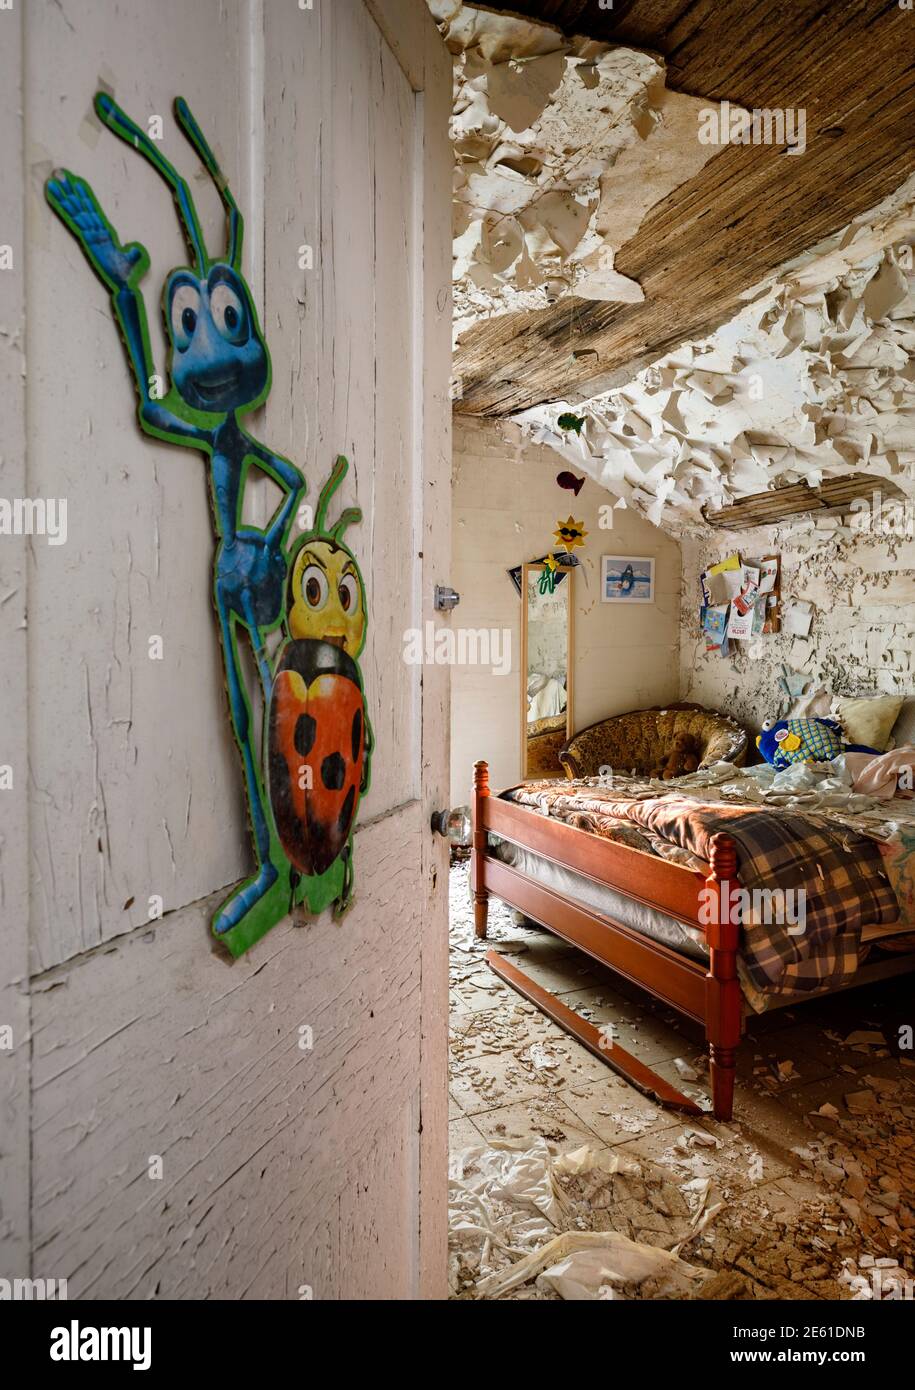 Ein unordentliches Schlafzimmer in einem verlassenen Haus mit Kinderspielzeug und Kunstwerken an den Wänden und abblätternder Farbe. Ontario, Kanada. Stockfoto